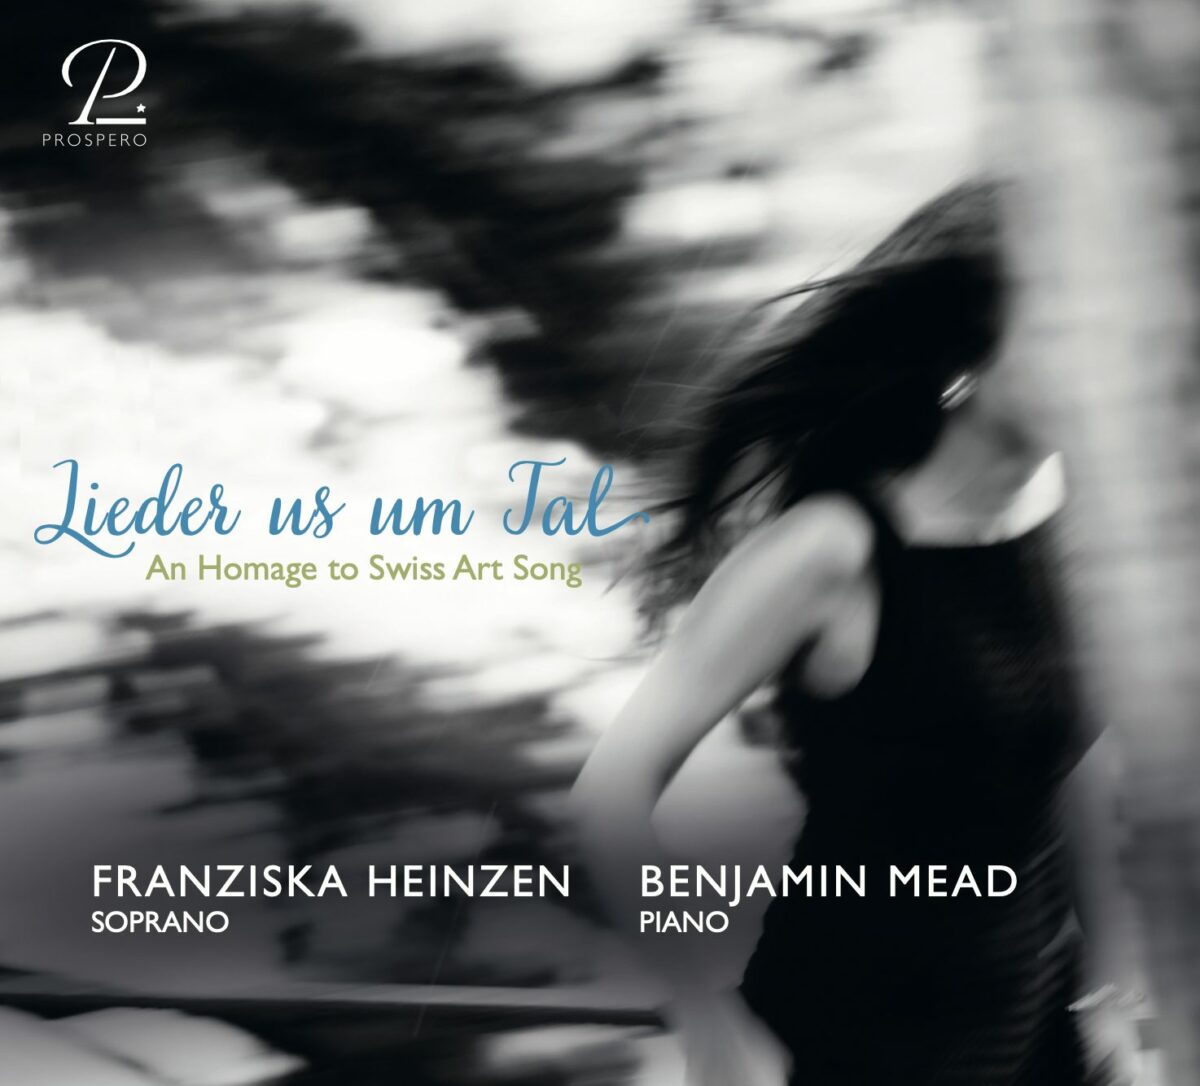 CD-Rezension: Franziska Heinzen und Benjamin Mead  „Lieder us um Tal“  klassik-begeistert.de, 22. Februar 2023